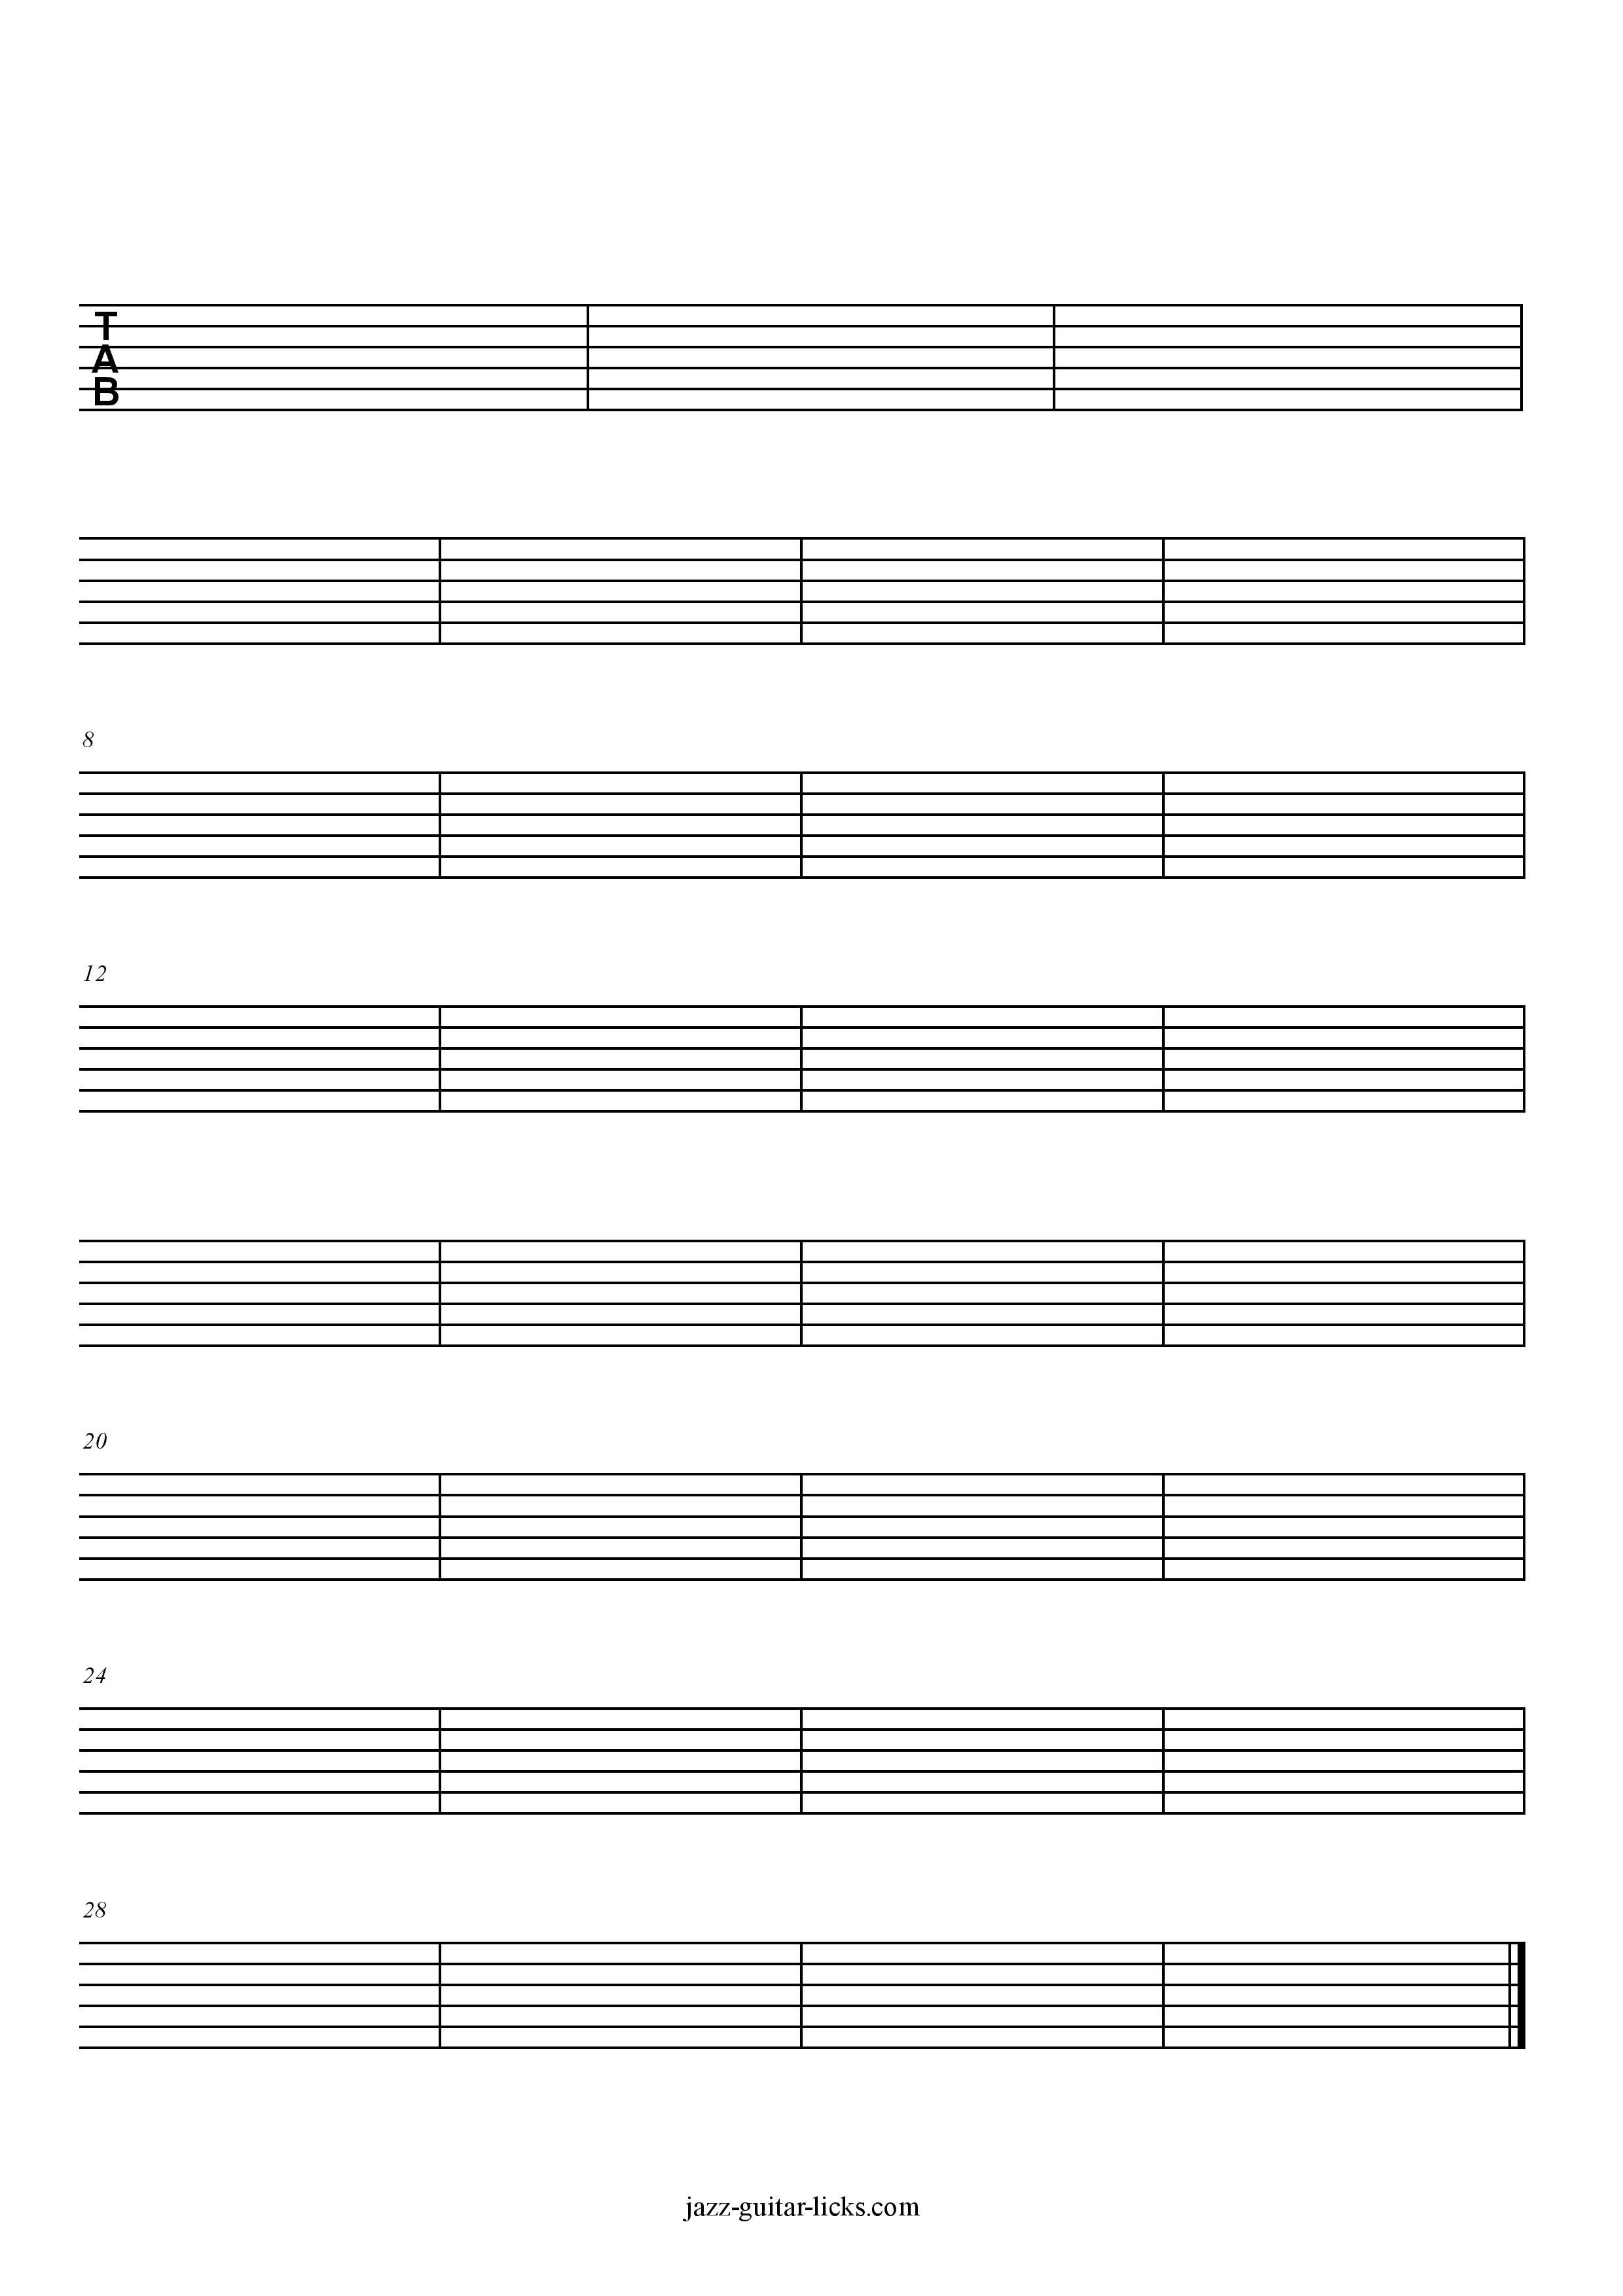 Printable Blank Guitar Tabs - Free Sheet Music | Jazz-Guitar-Licks - Free Printable Guitar Tablature Paper